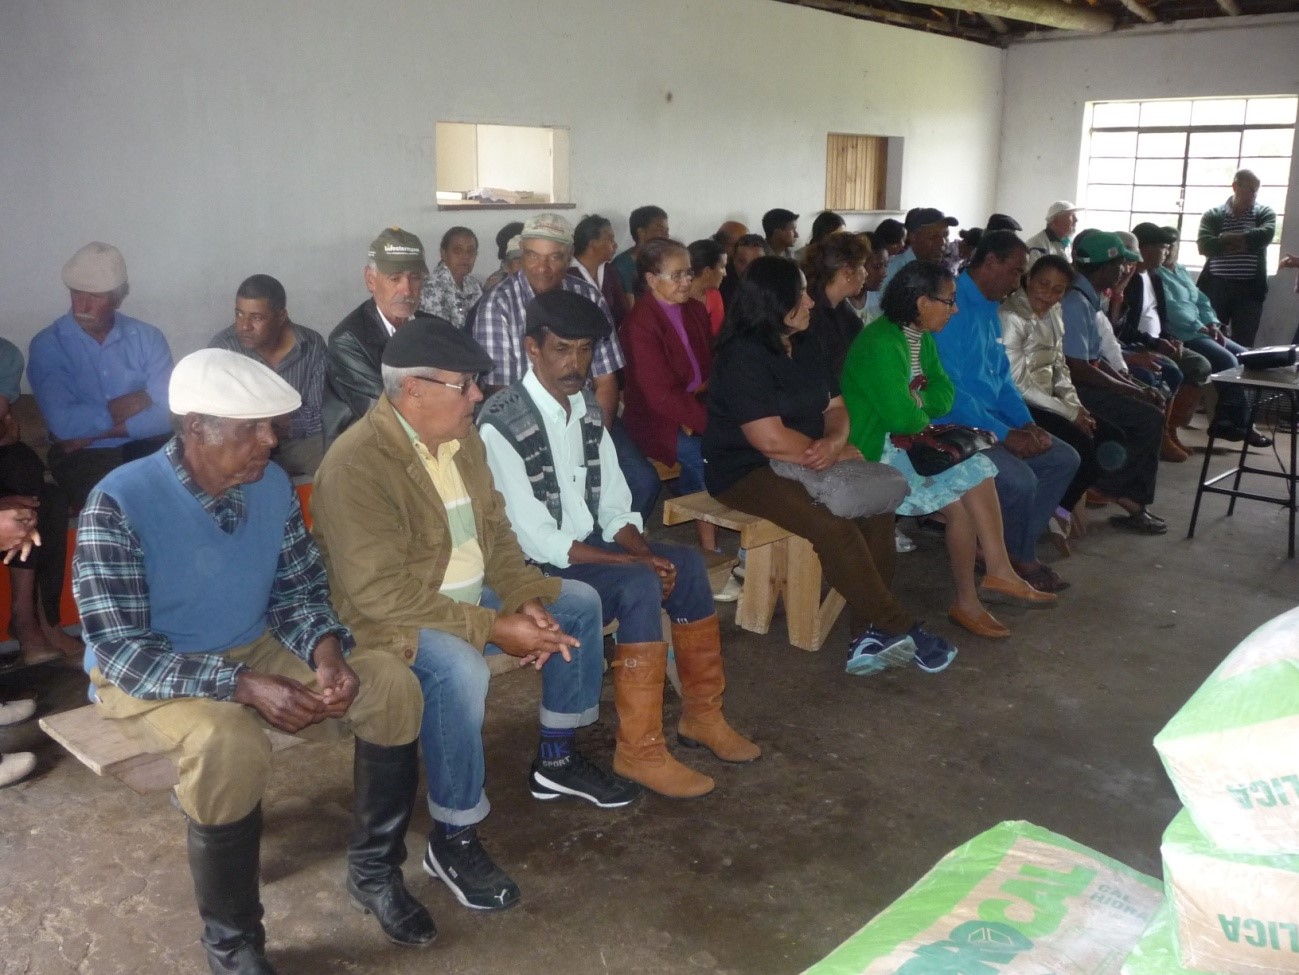 Reunião de apresentação do projeto e da equipe, comunidade Rincão do Quilombo (Piratini), em 31 de agosto de 2014. Acervo do Projeto.